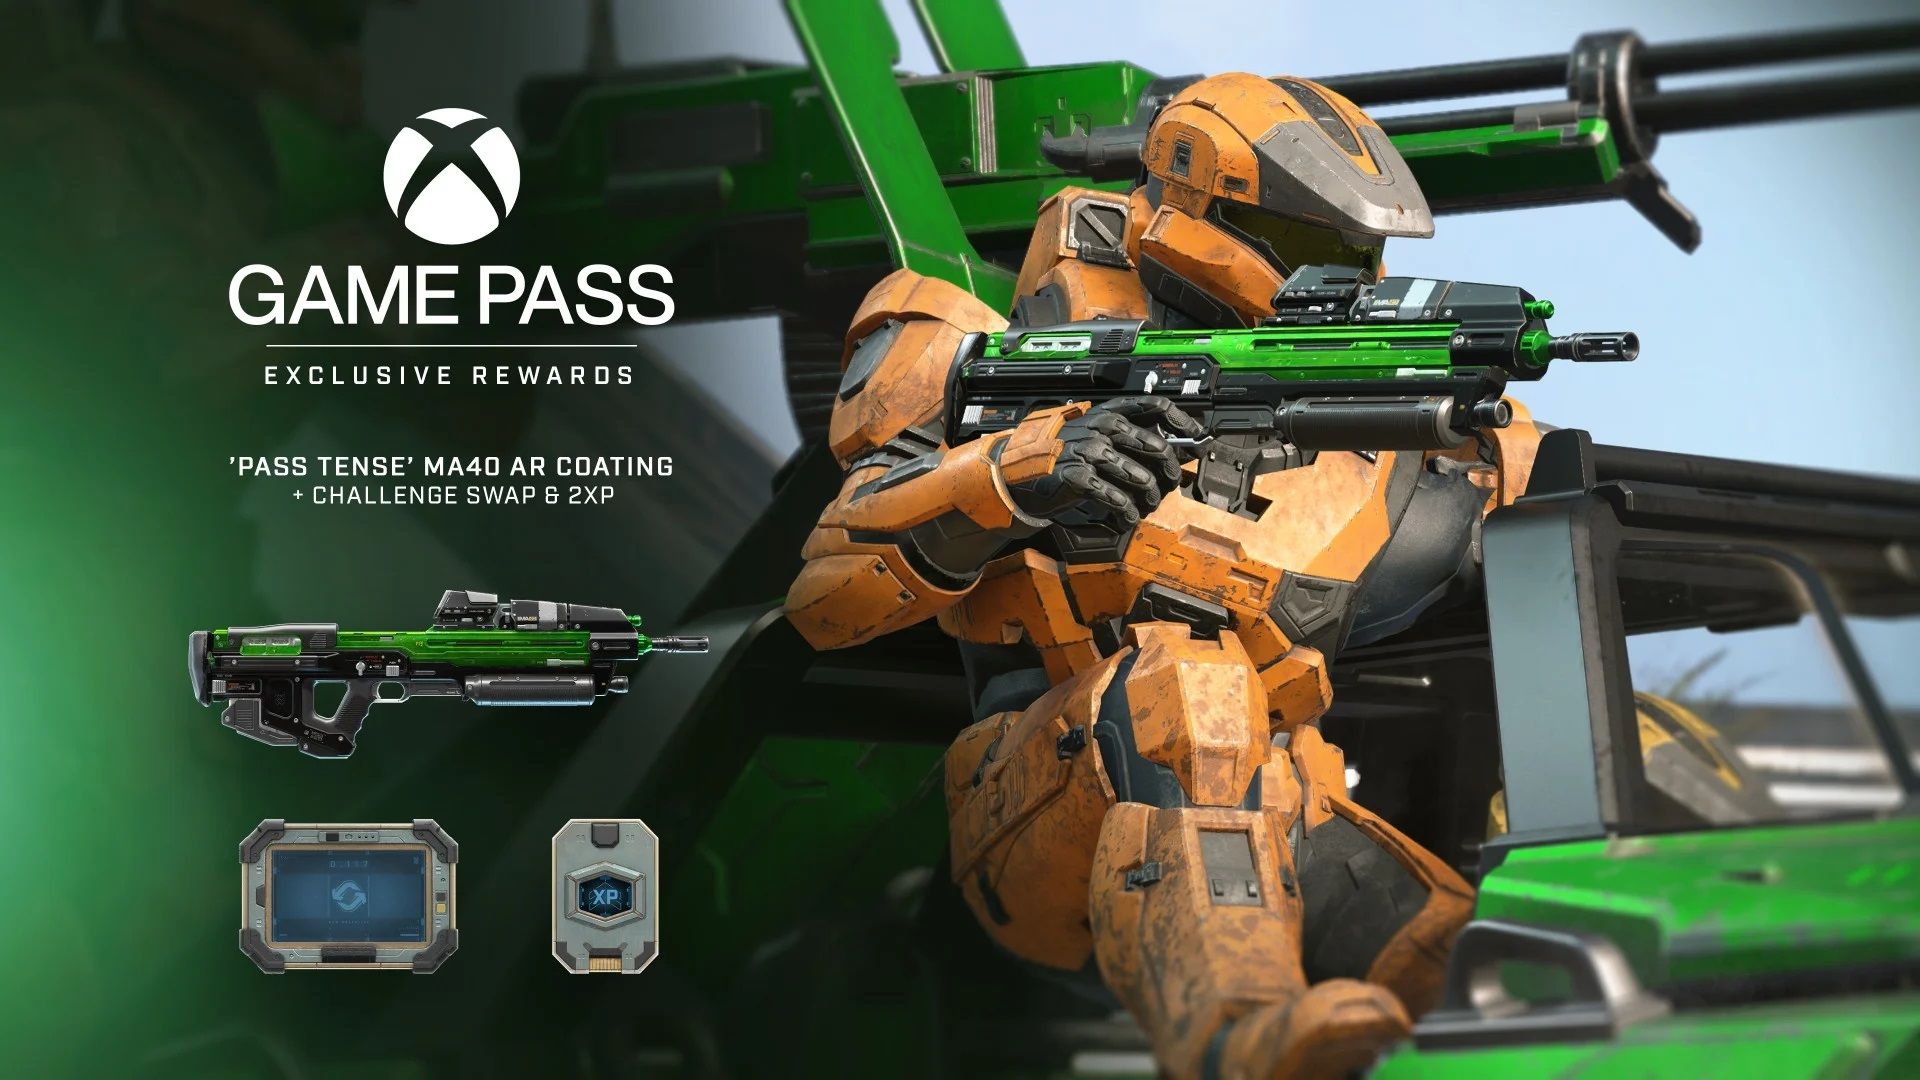 Regalias do Xbox Game Pass